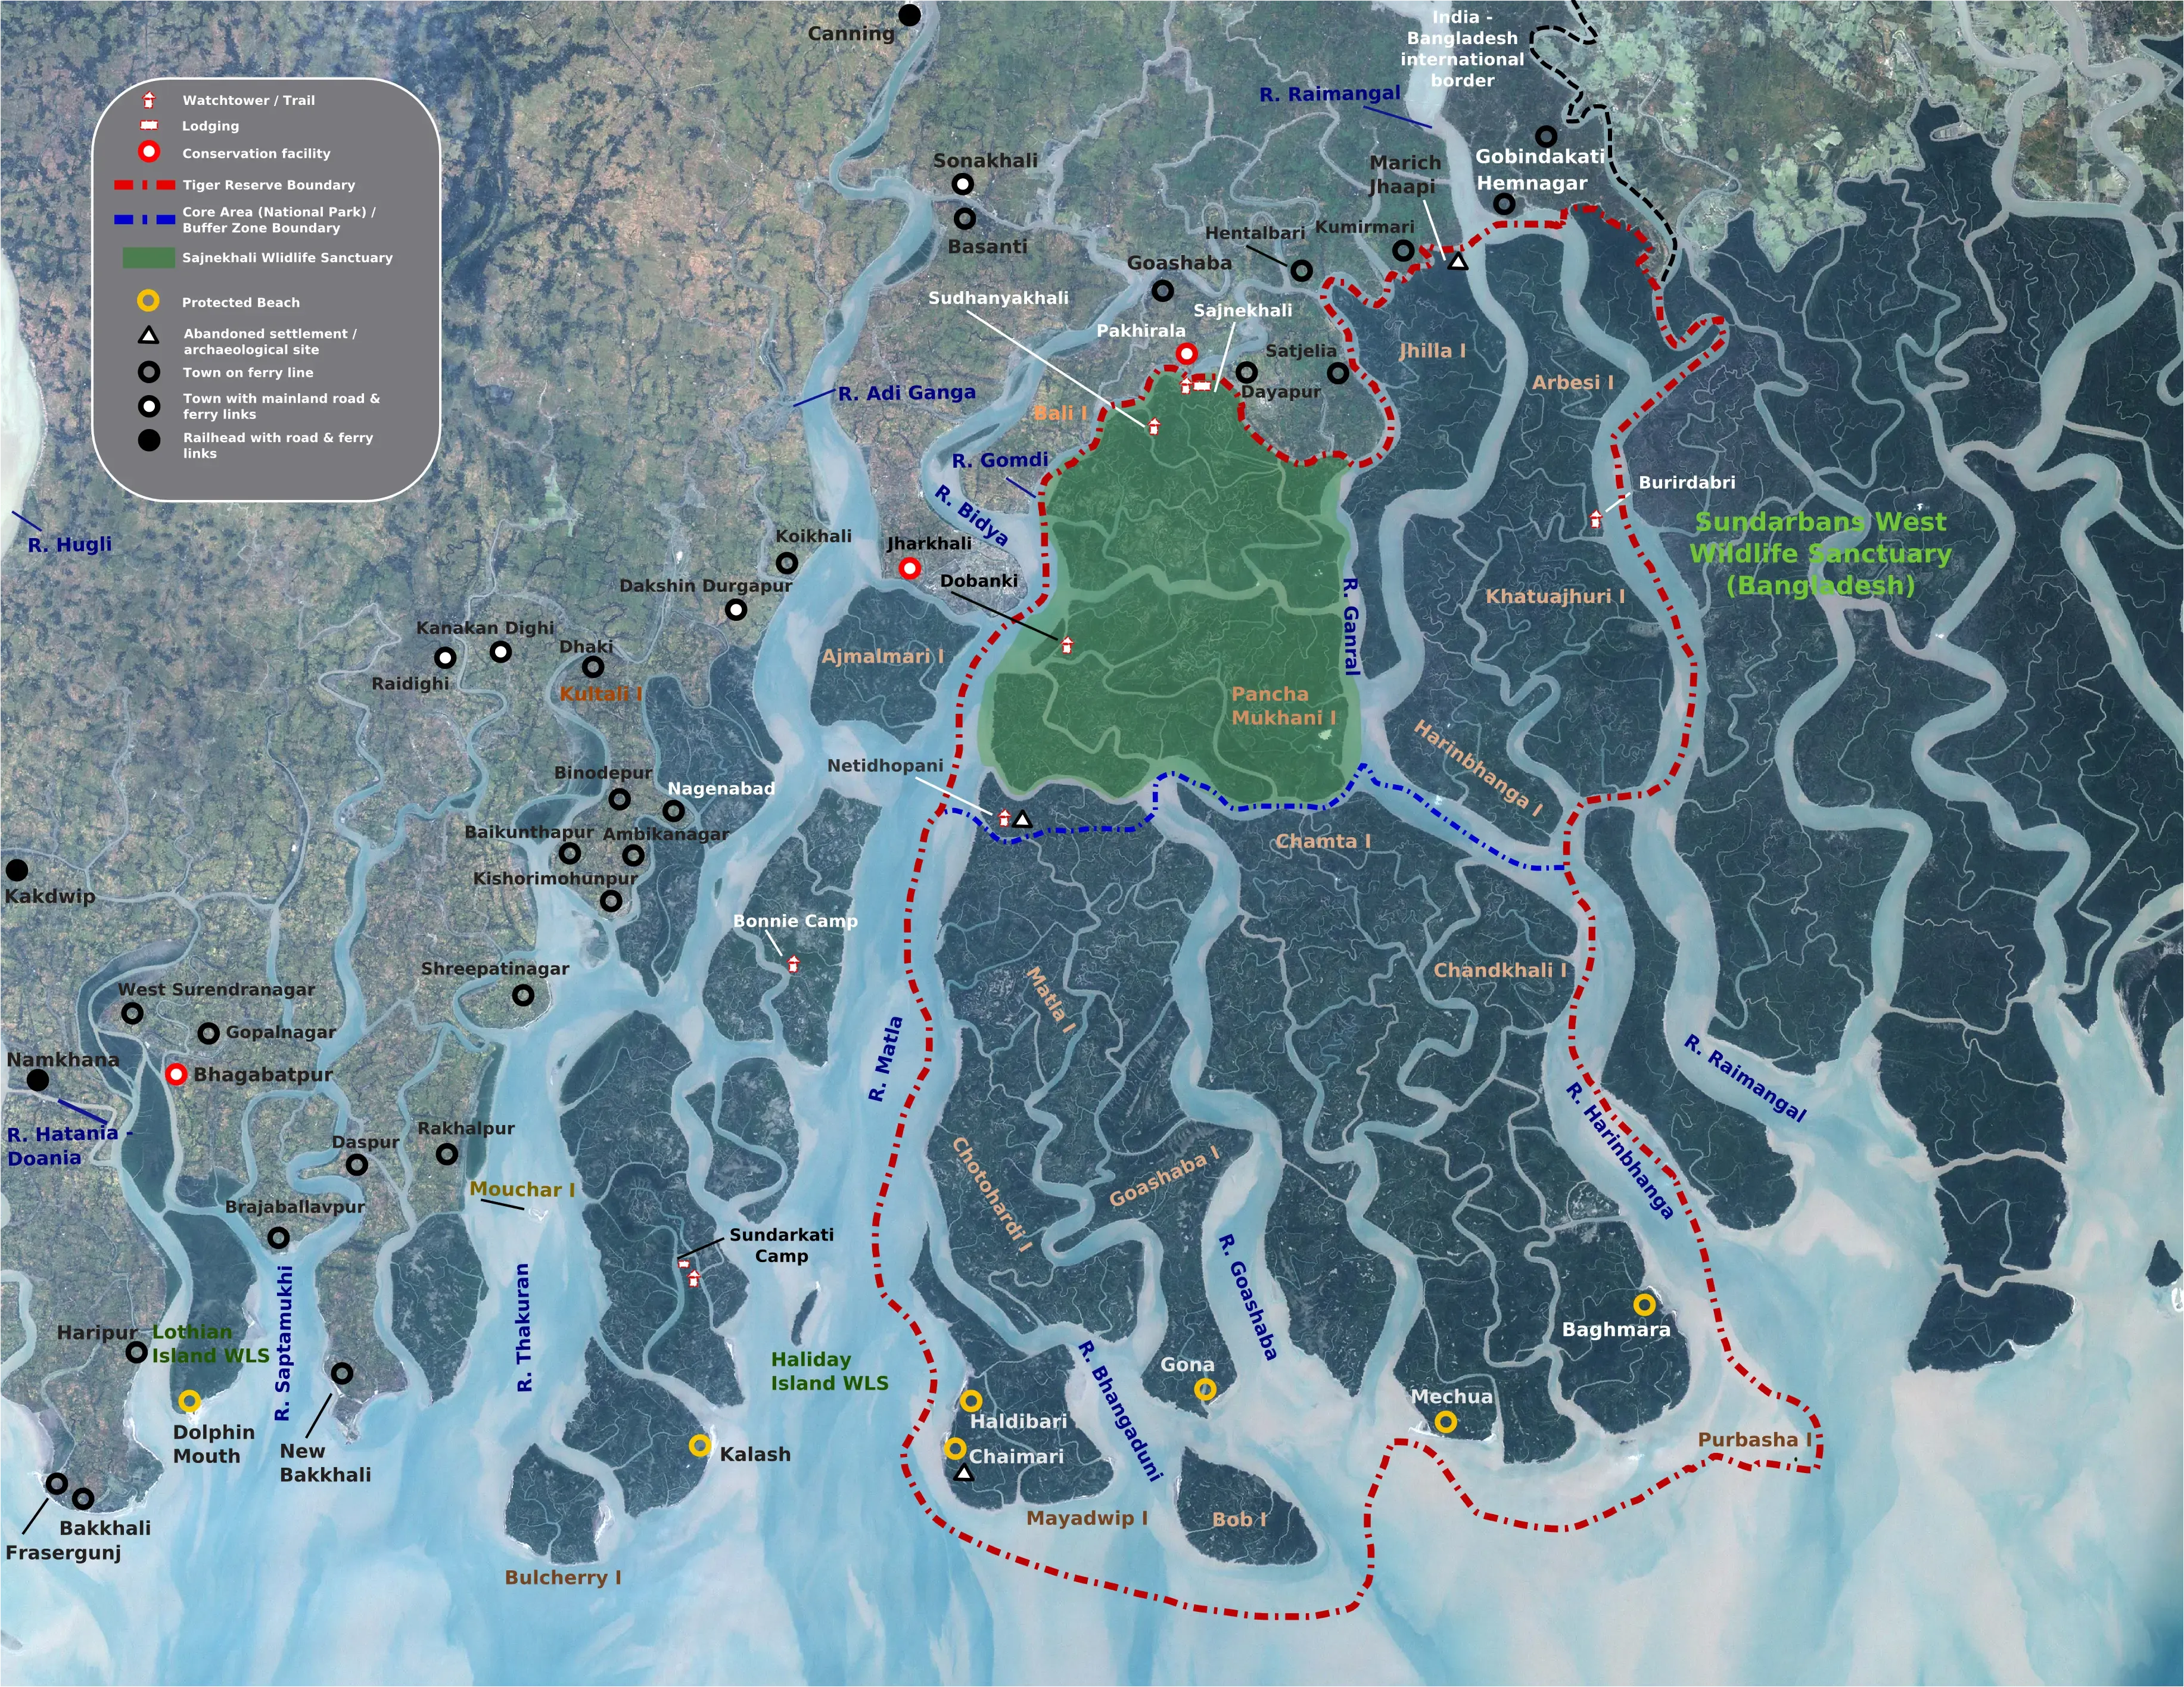 Sundarban Delta Formation